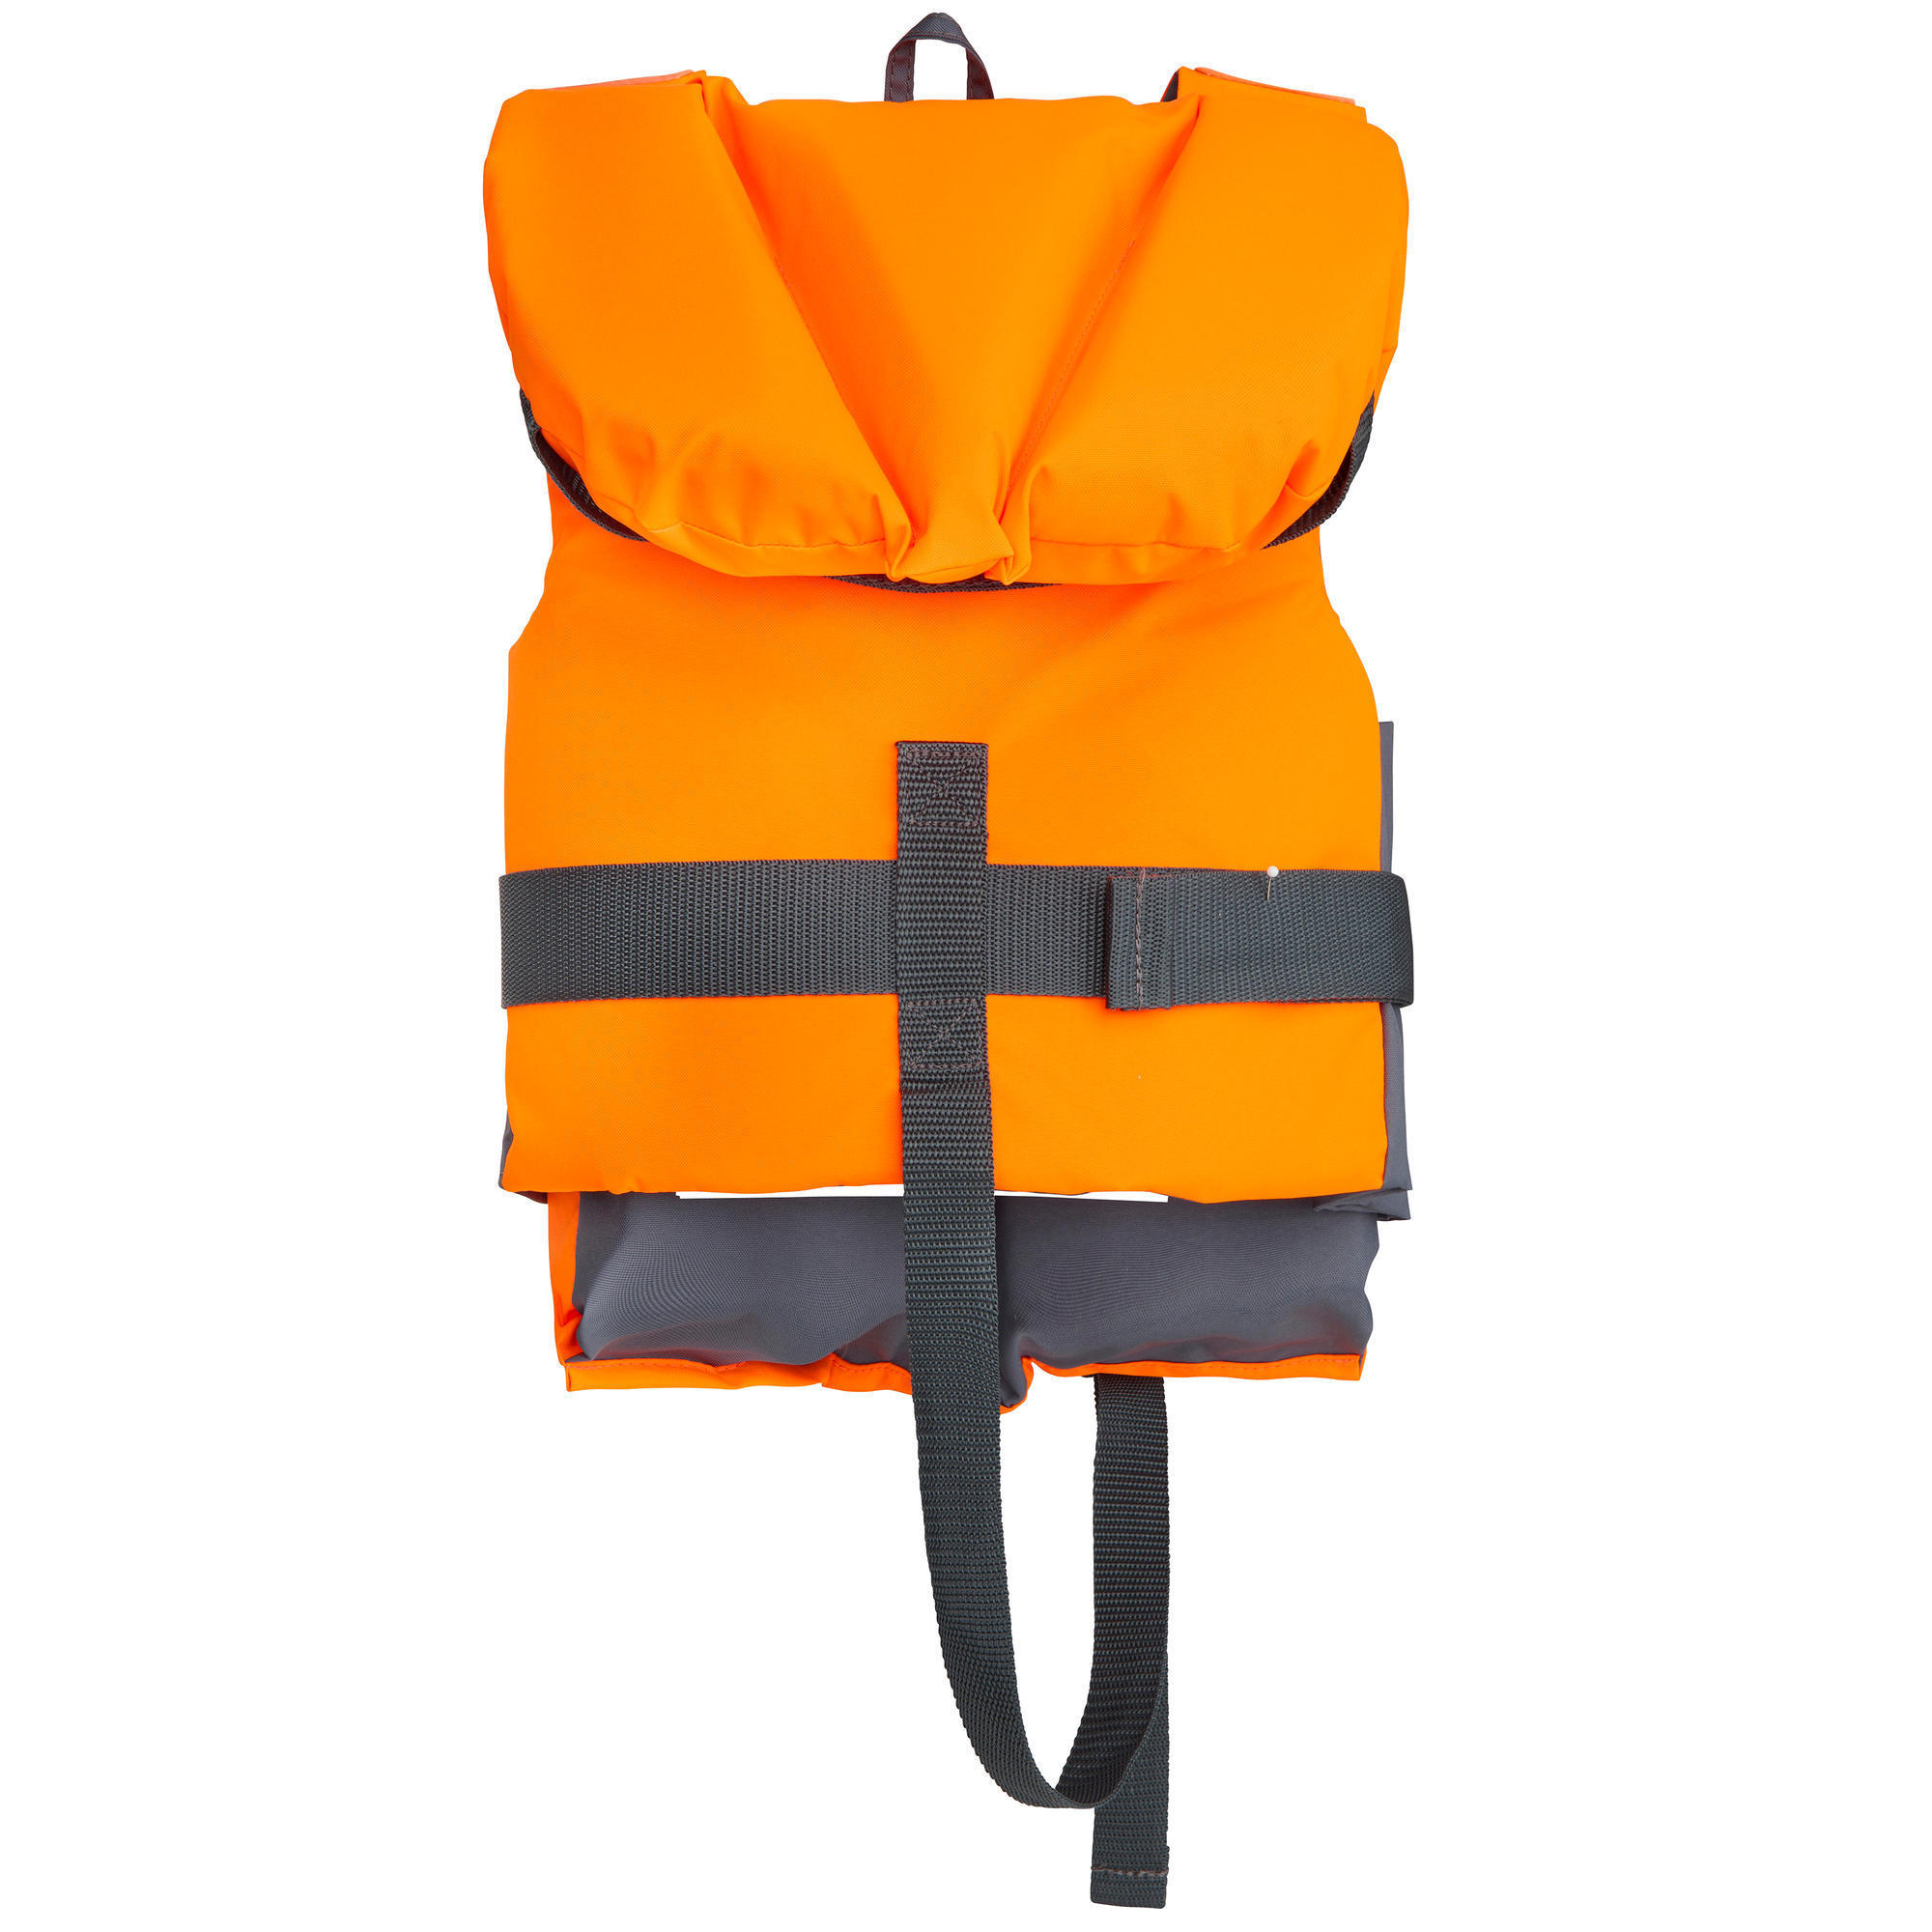 decathlon children's life jackets